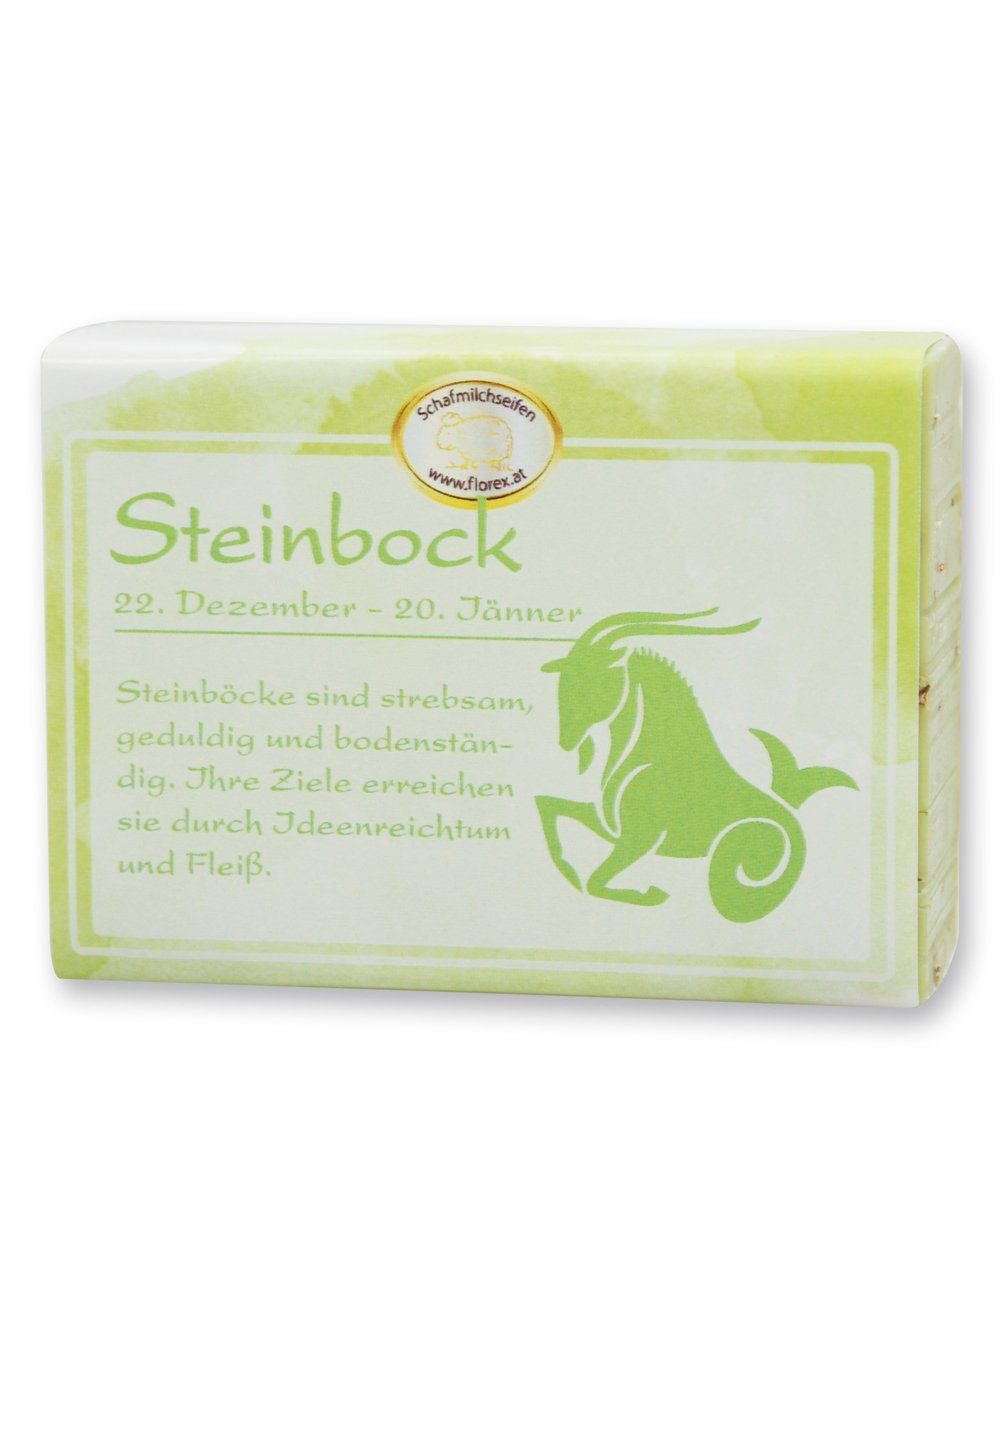 Gerlinde Hofer _ Florex GmbH Handseife Steinbock 150 g, 1-tlg., Schafmilchseife mit Bio Schafmilch Sternzeichen | Handseifen